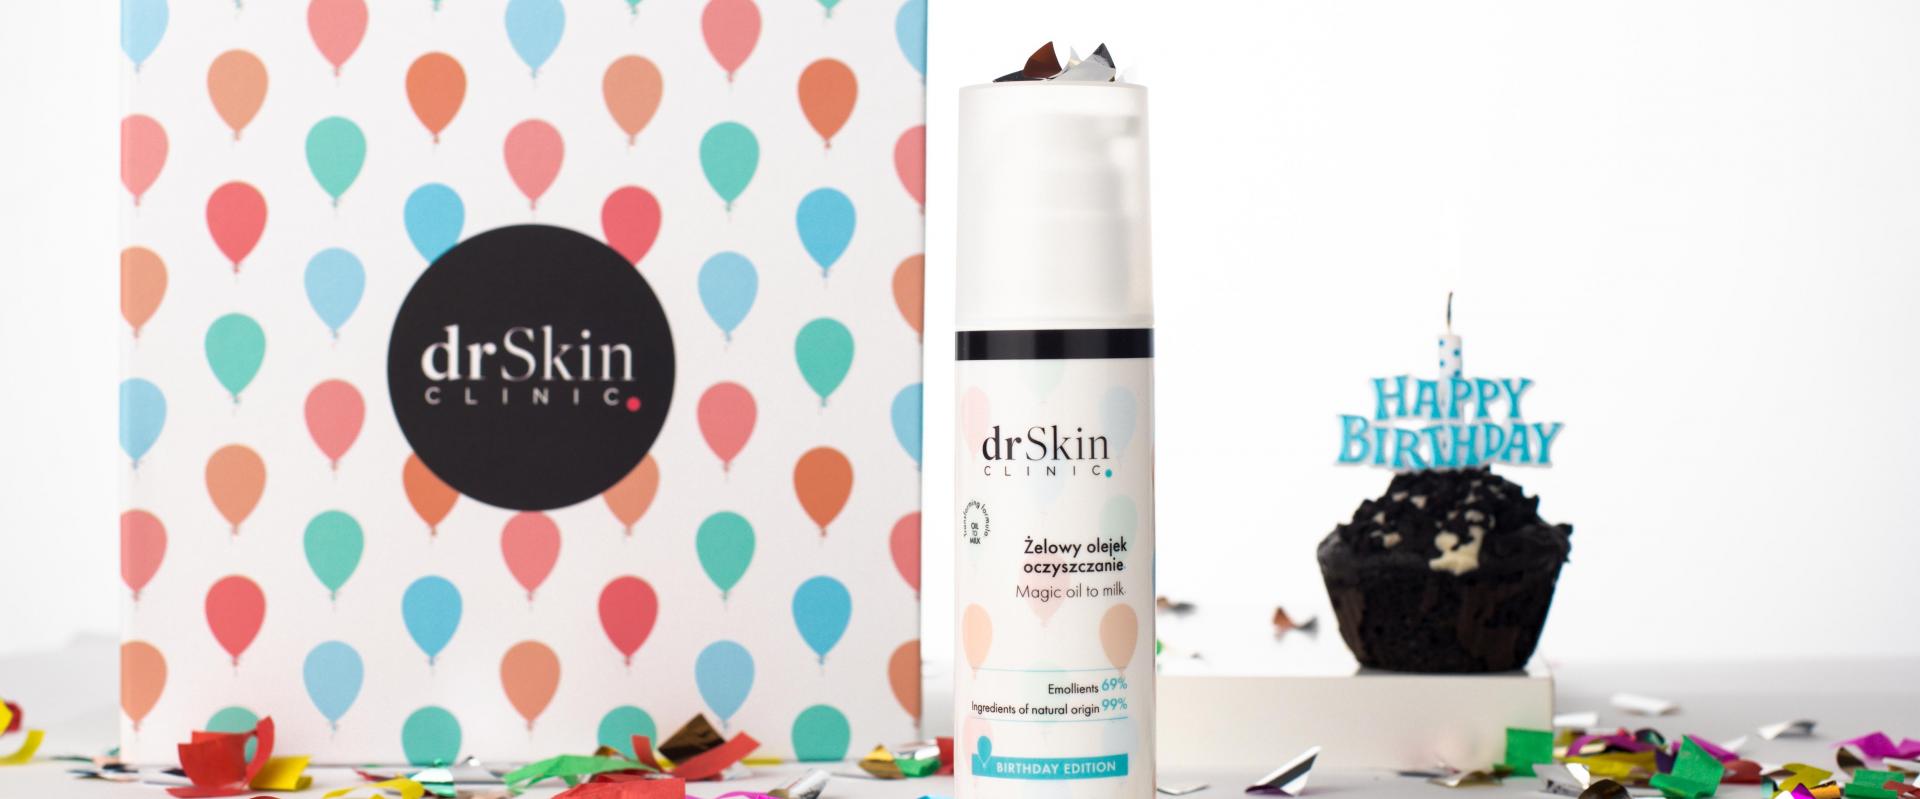 Marka drSkin Clinic obchodzi pierwsze urodziny i poszerza się o kolejny produkt